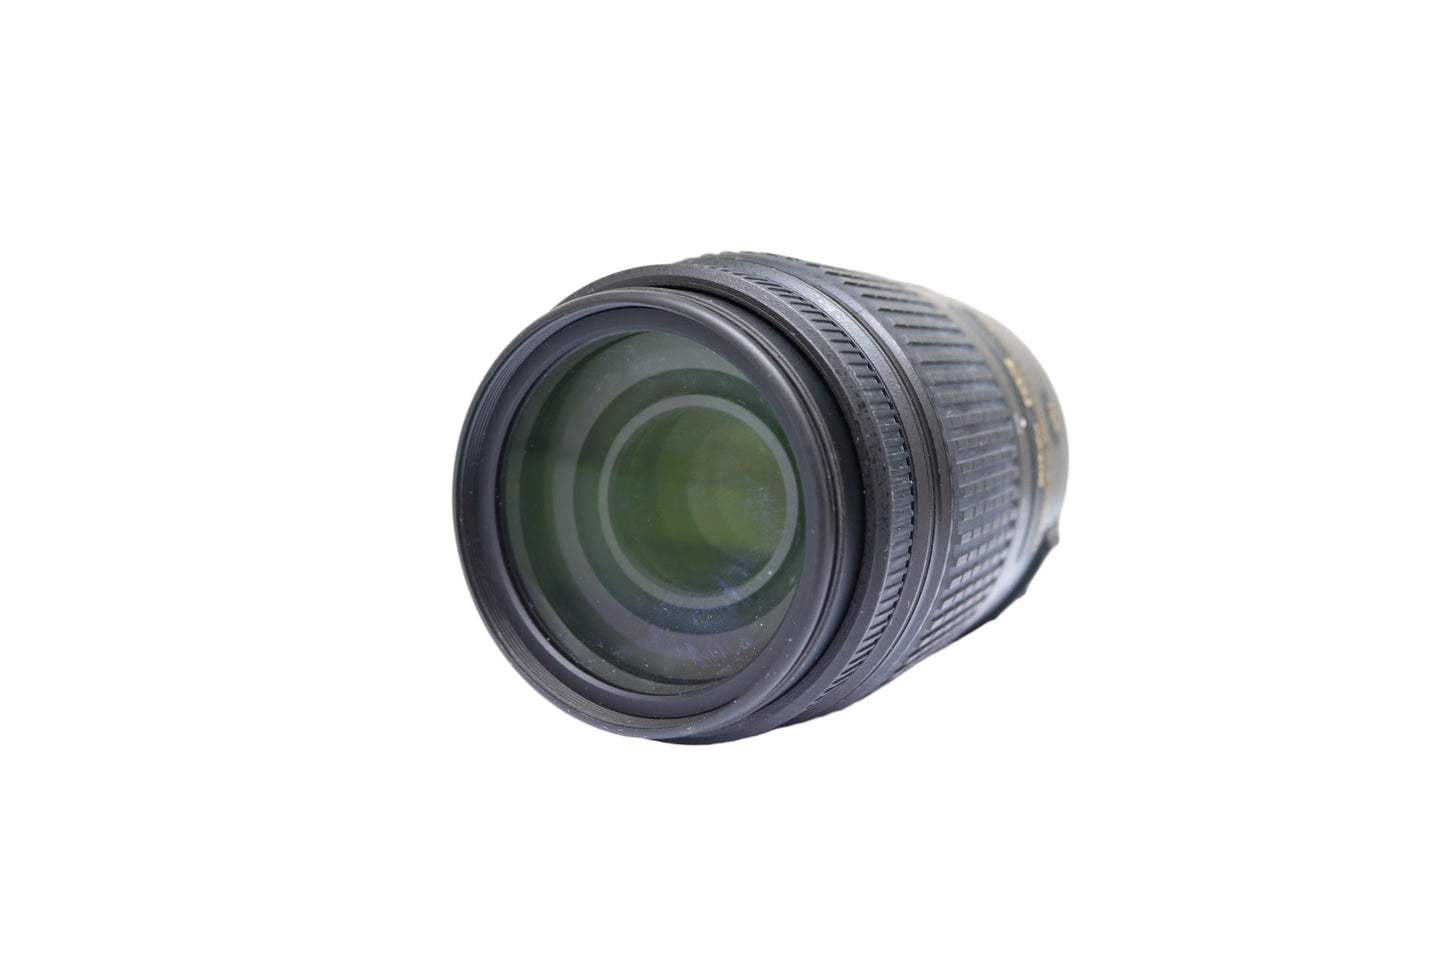 Nikon DX AF-S Nikkor 55-300mm 1:4.5-5.6 G ED VR Zoom Lens